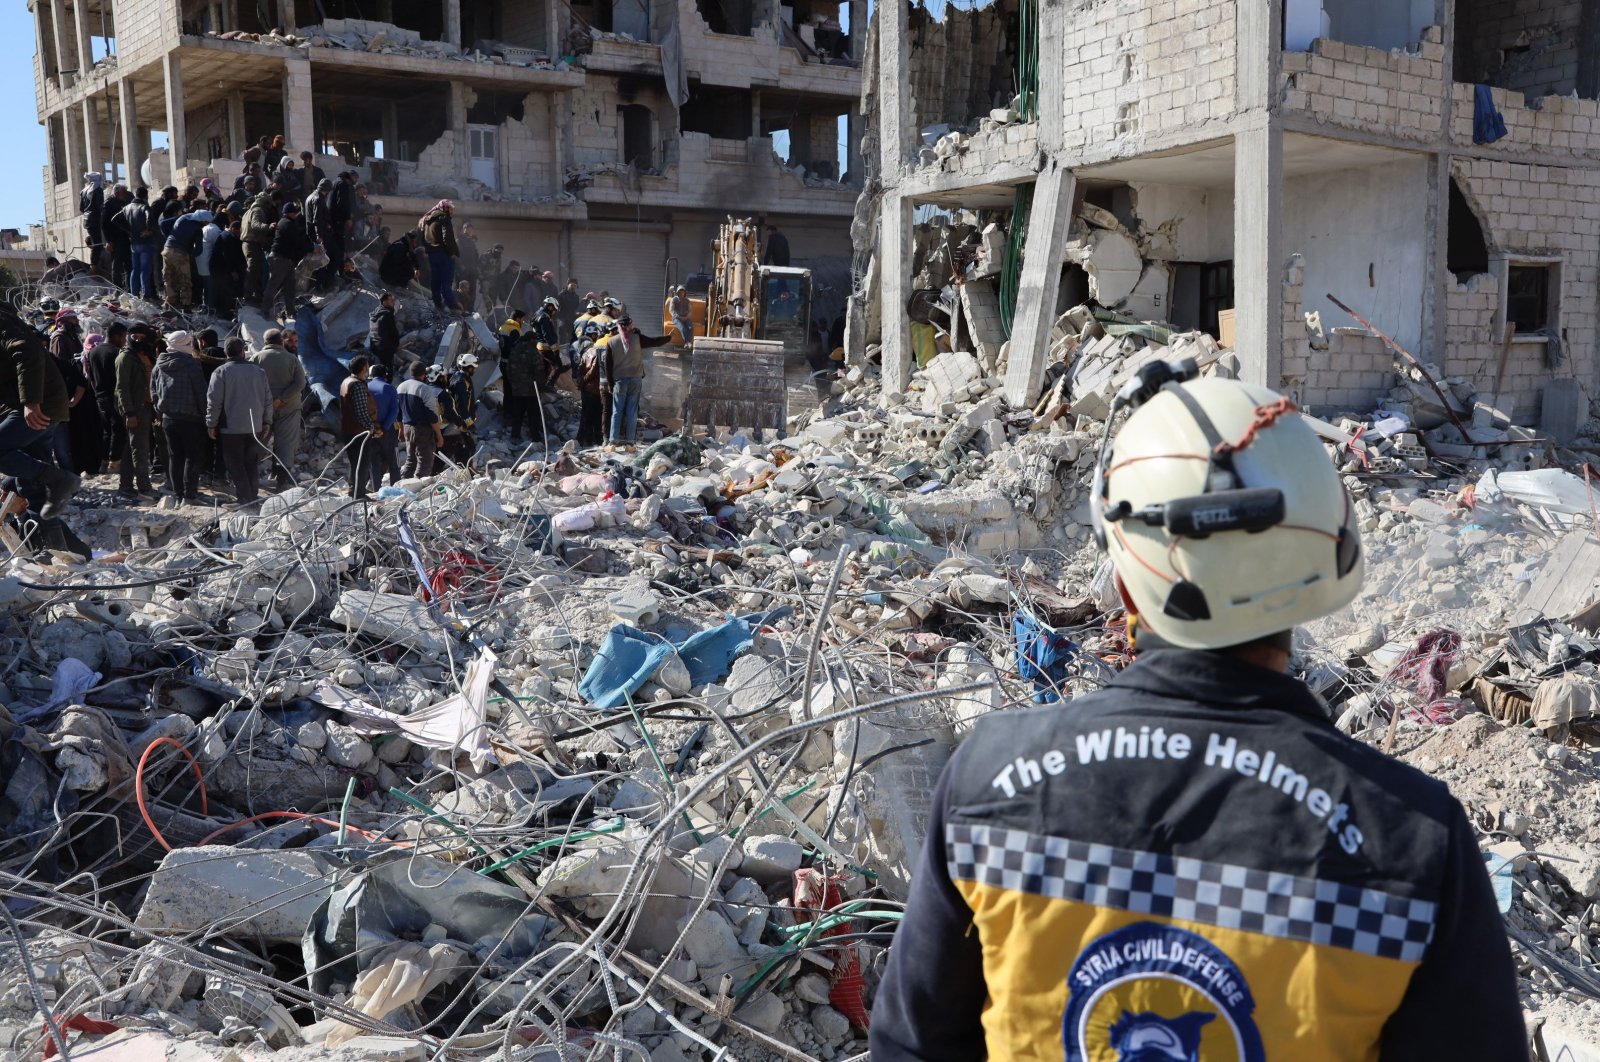 Korban tewas Suriah mendekati angka 3.400 dengan bantuan internasional mengalir masuk